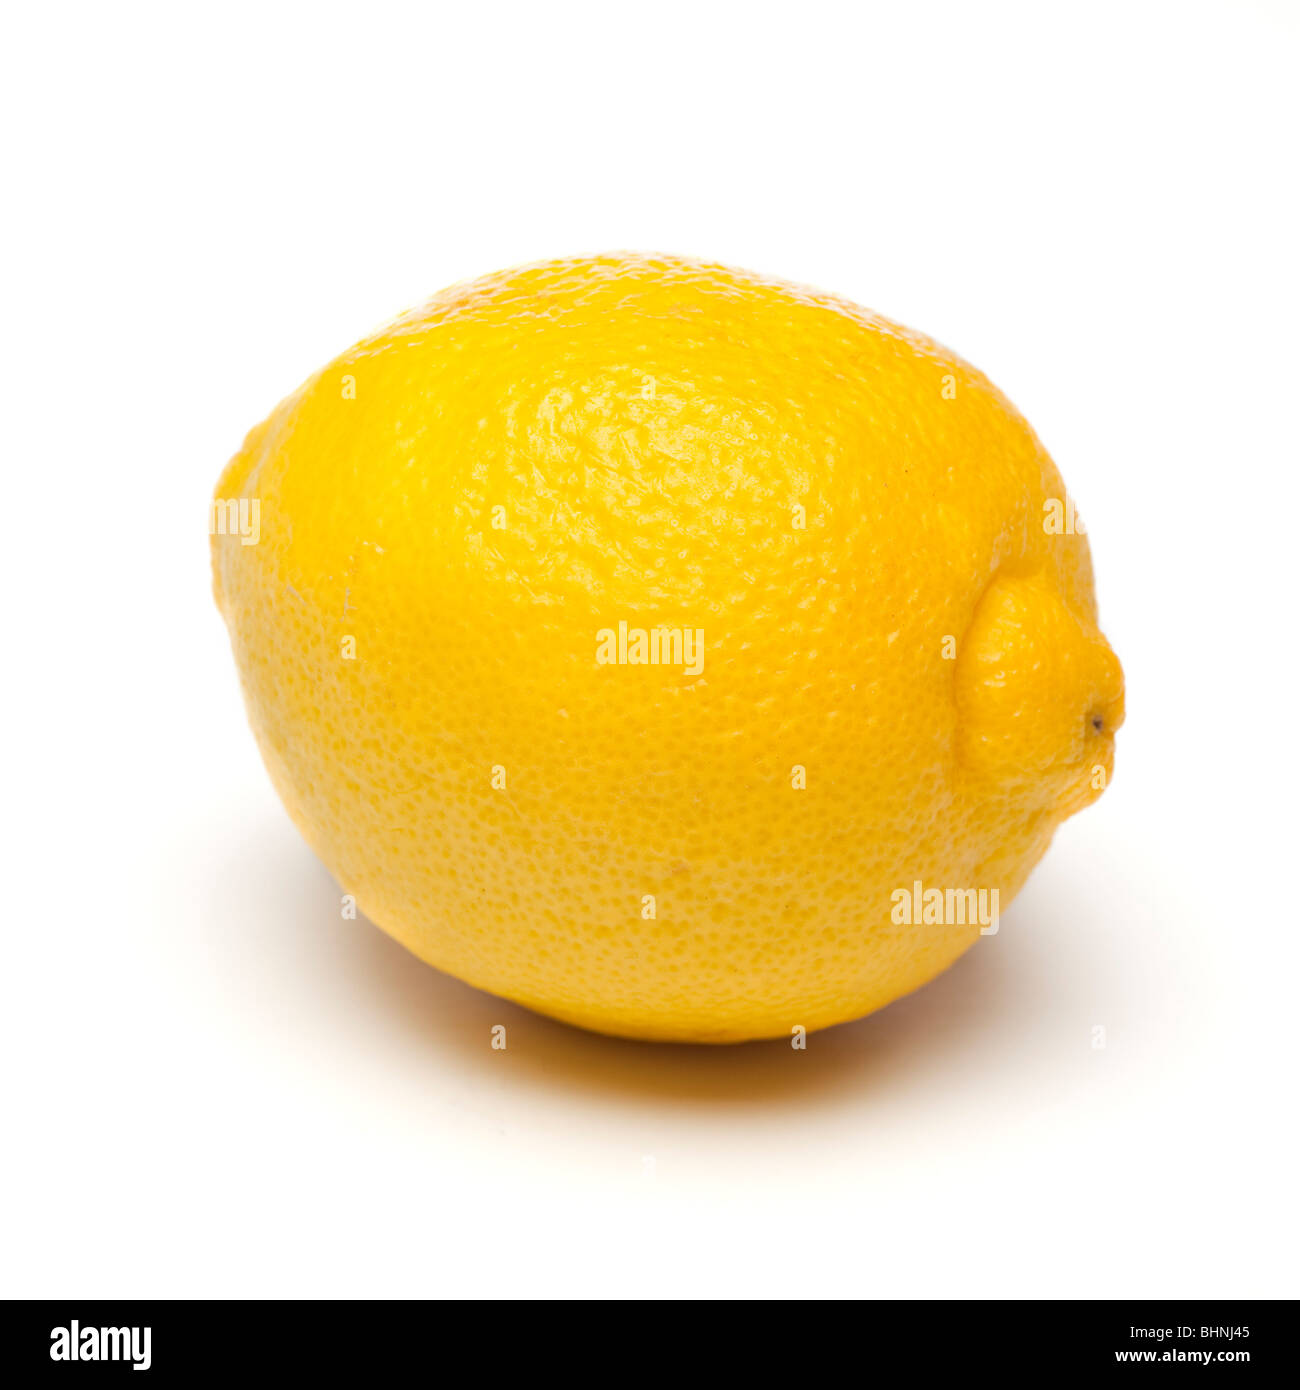 Lemon close up, whole on white background Stock Photo